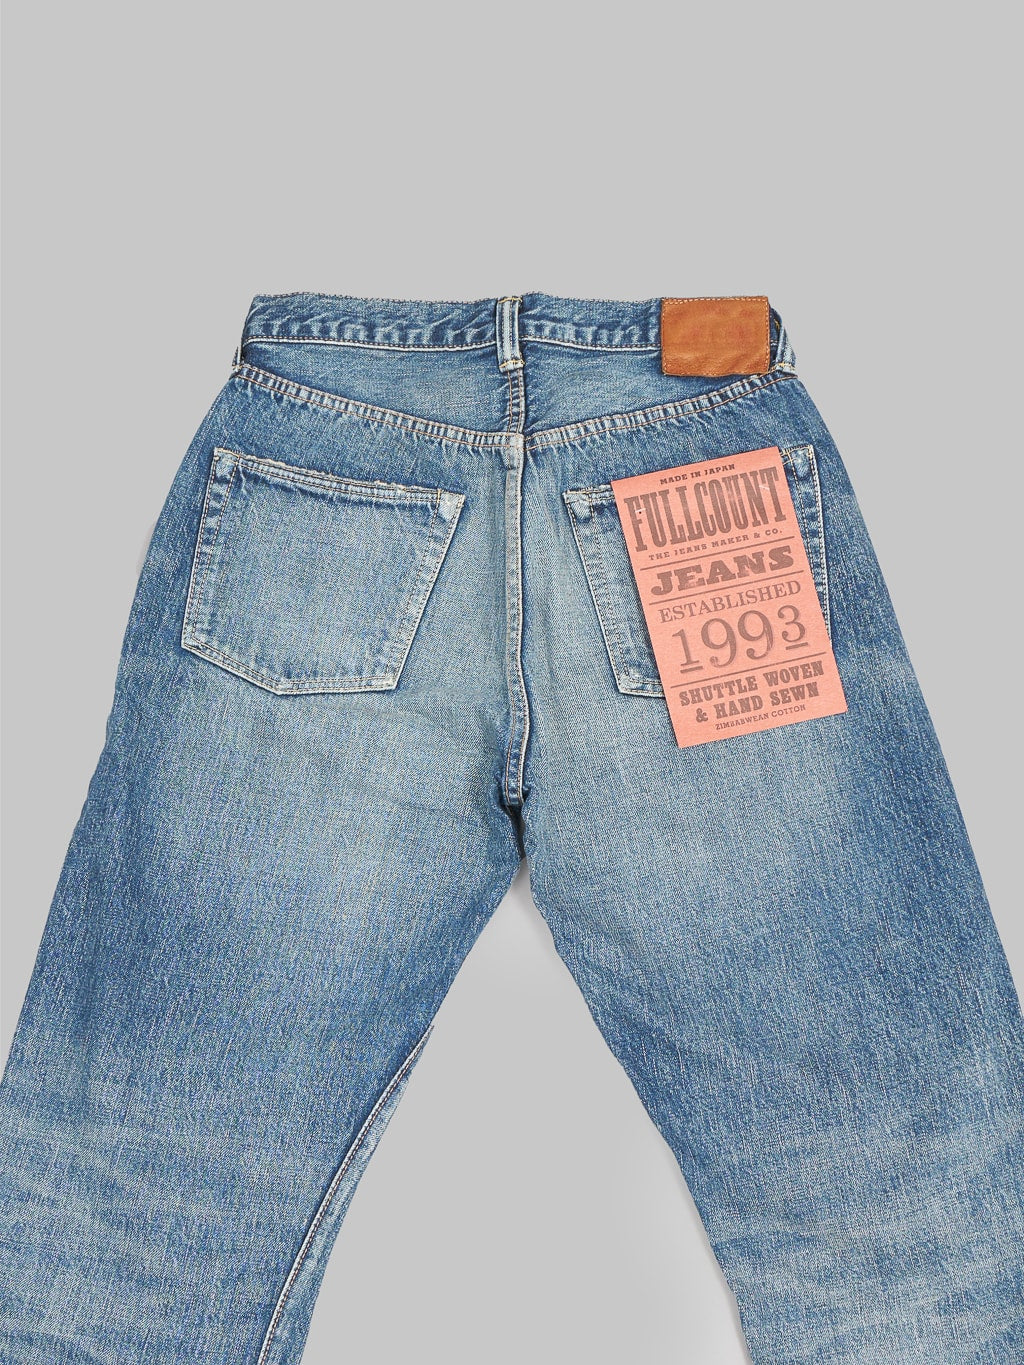 Fullcount 1101 Dartford wide Straight Jeans back details